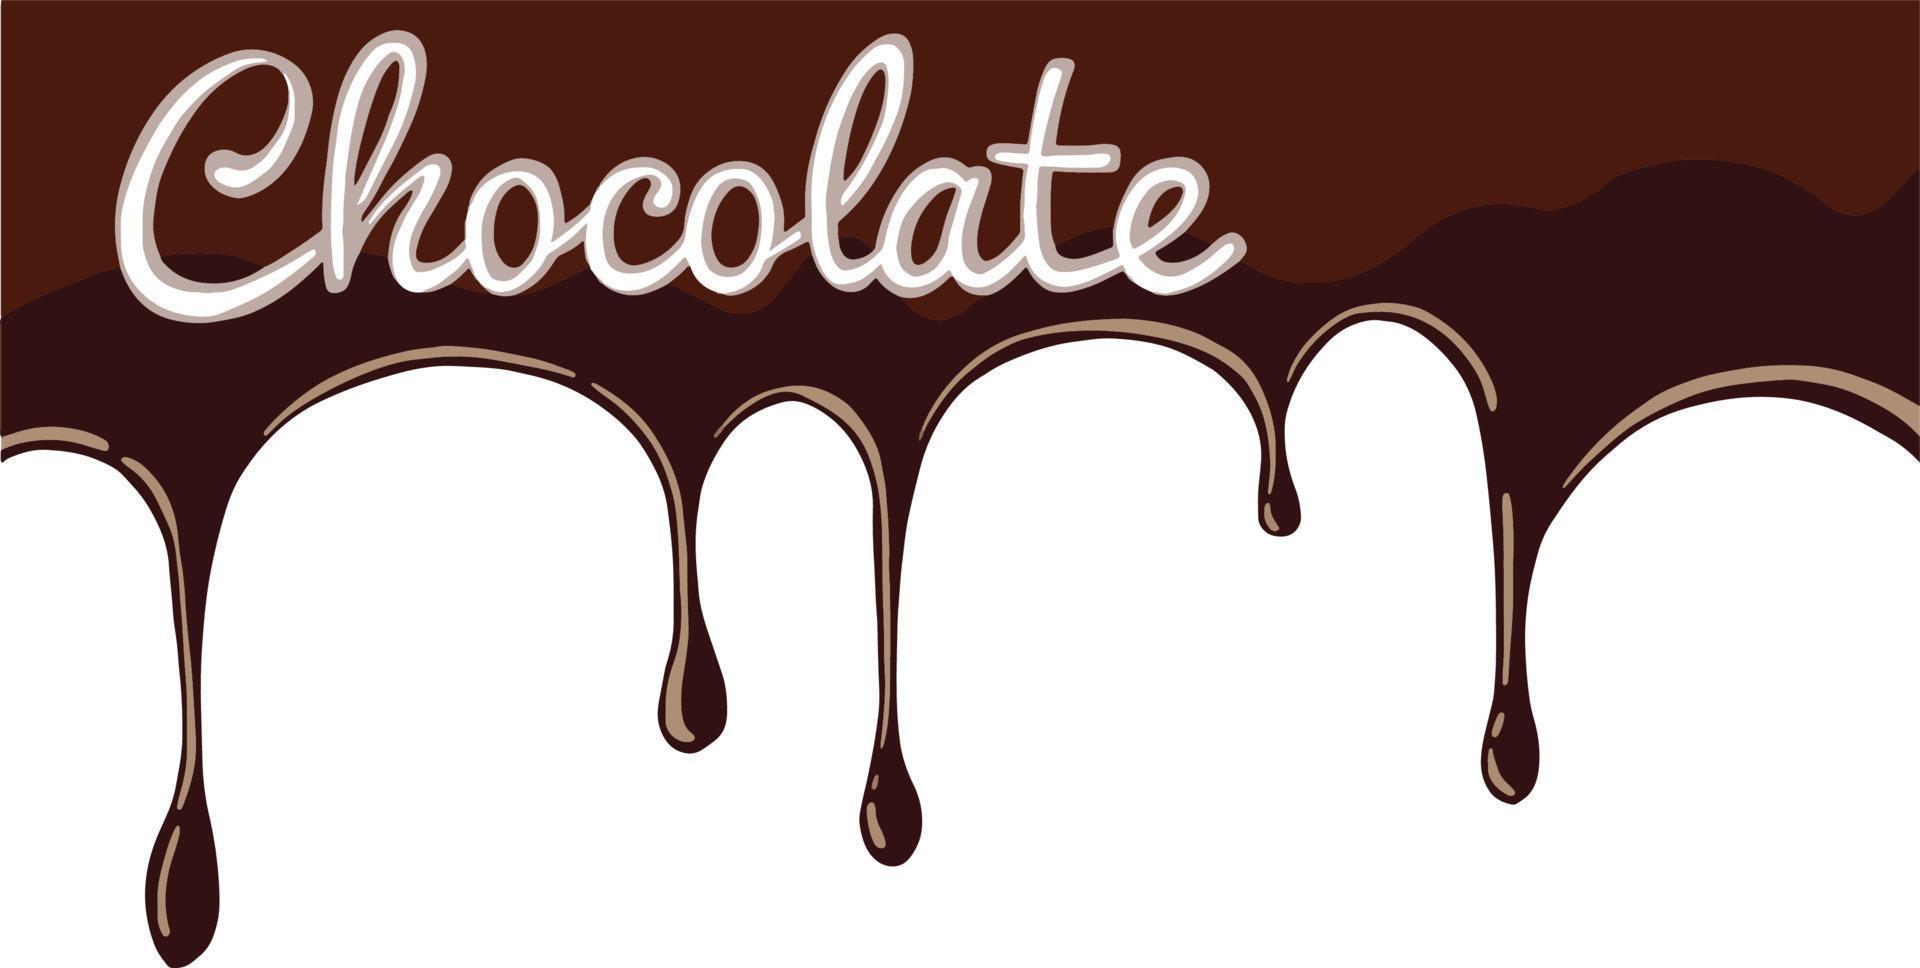 Schokolade spritzt Hintergrund. Brauner heißer Kaffee oder Schokolade mit Tropfen und Bolzen isoliert auf weißem Hintergrund. hochwertige Abbildung vektor